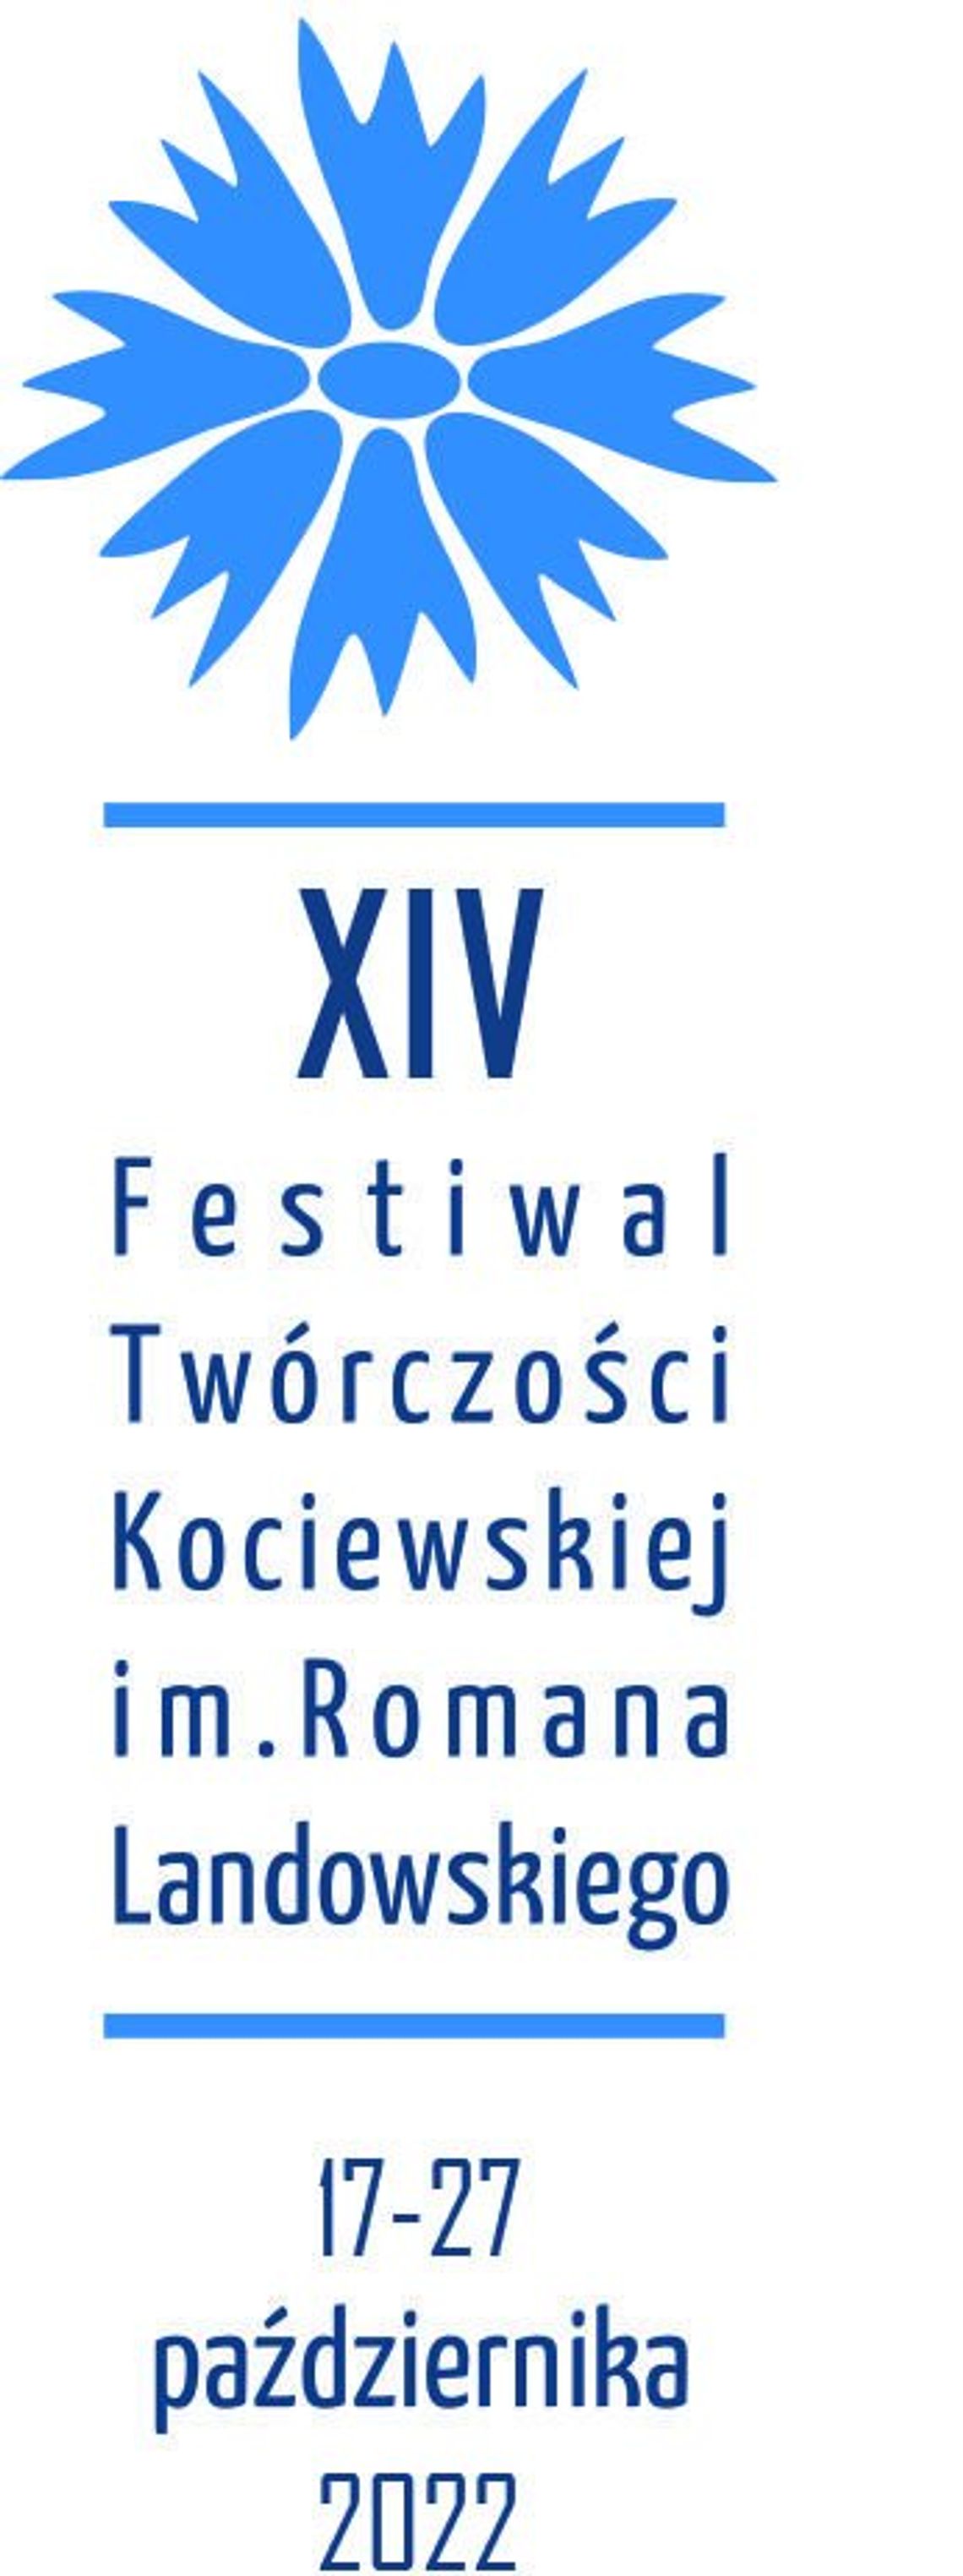 XIV Festiwal Twórczości Kociewskiej im. Romana Landowskiego w CKiS